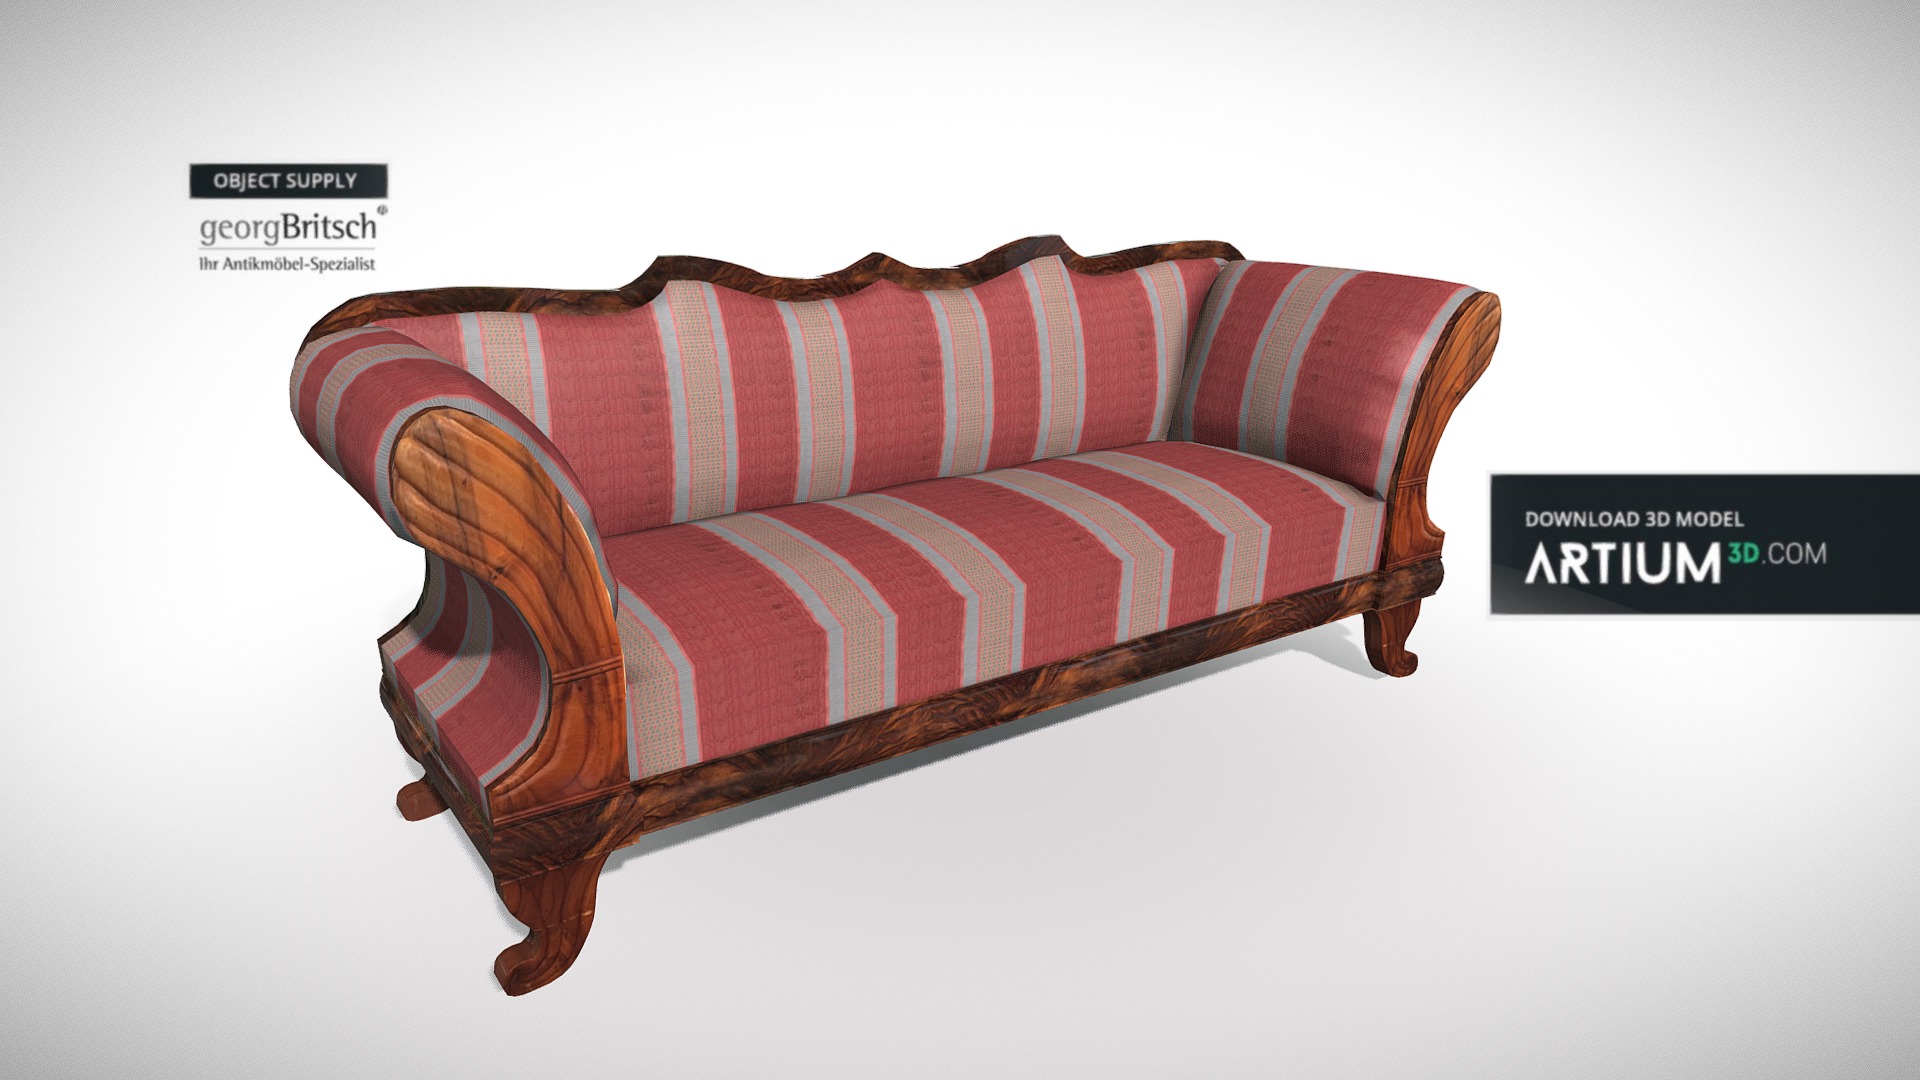 3D model Biedermeier sofa – Austria 1840 – Georg Britsch - This is a 3D model of the Biedermeier sofa - Austria 1840 - Georg Britsch. The 3D model is about a red and white striped pillow.